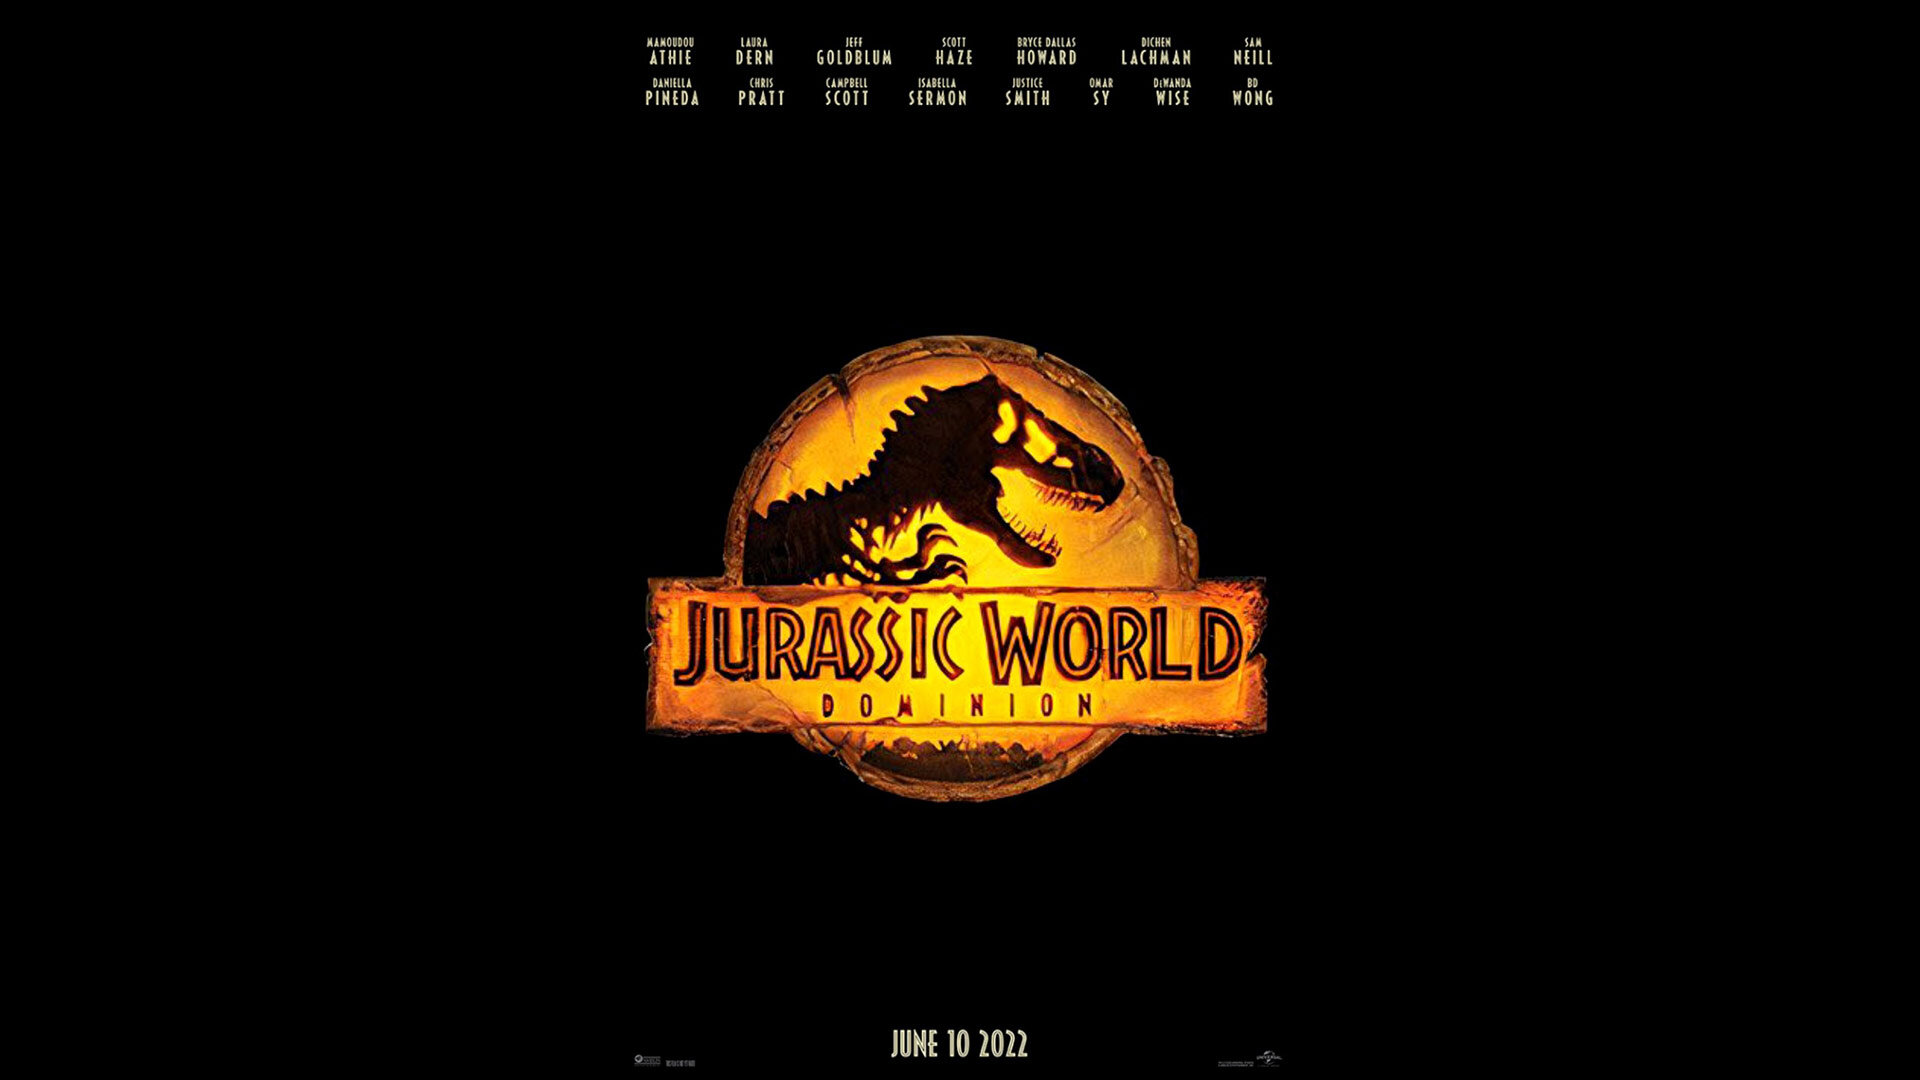 Οι ηθοποιοί Sam Neill, Jeff Goldblum και Laura Dern επιστρέφουν με το Jurassic World: Dominion